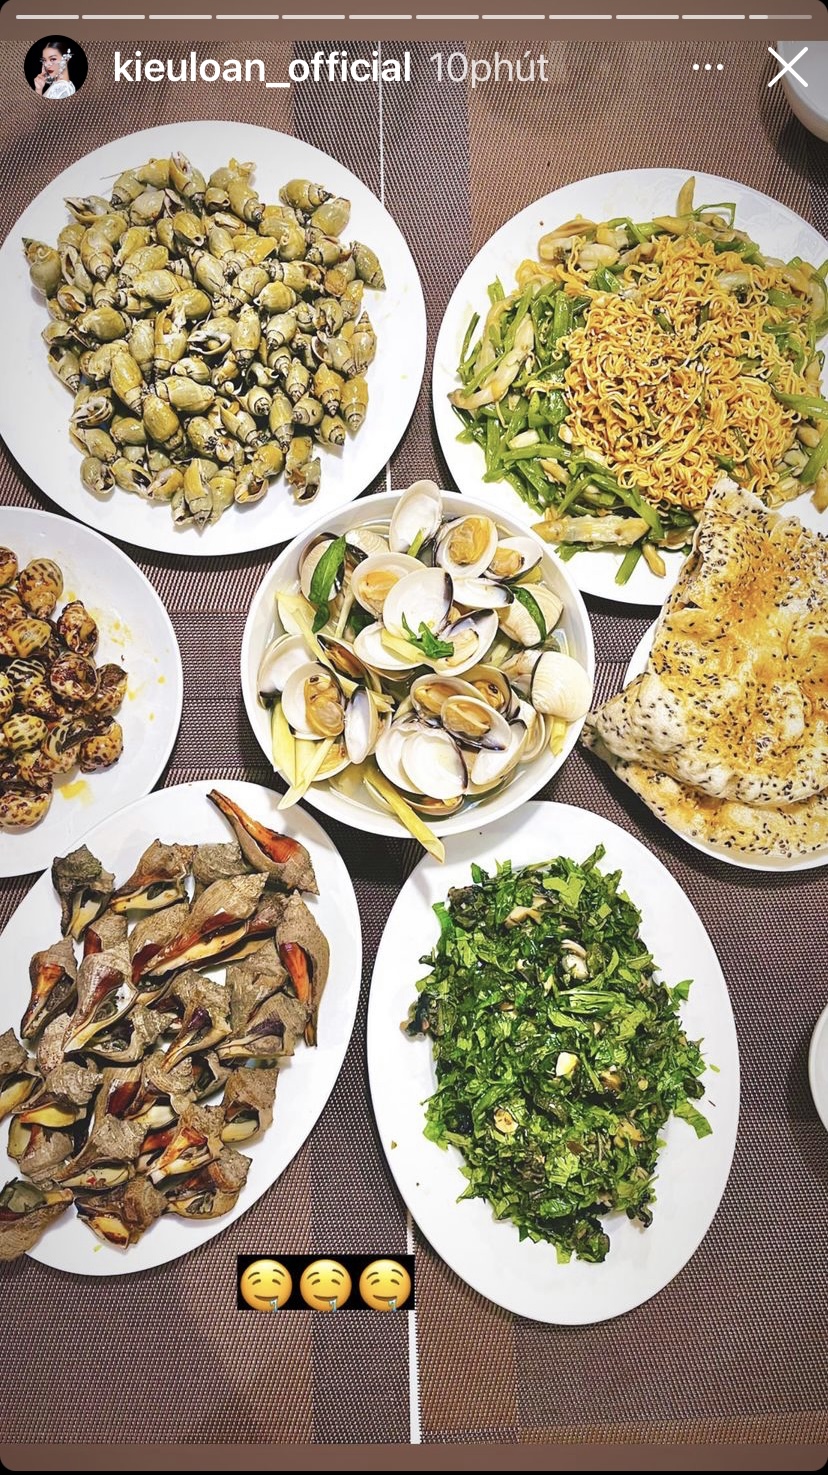 Nhìn bàn ăn của Á hậu Kiều Loan mà khối người mê ốc và hải sản phải thèm ứa nước miếng.